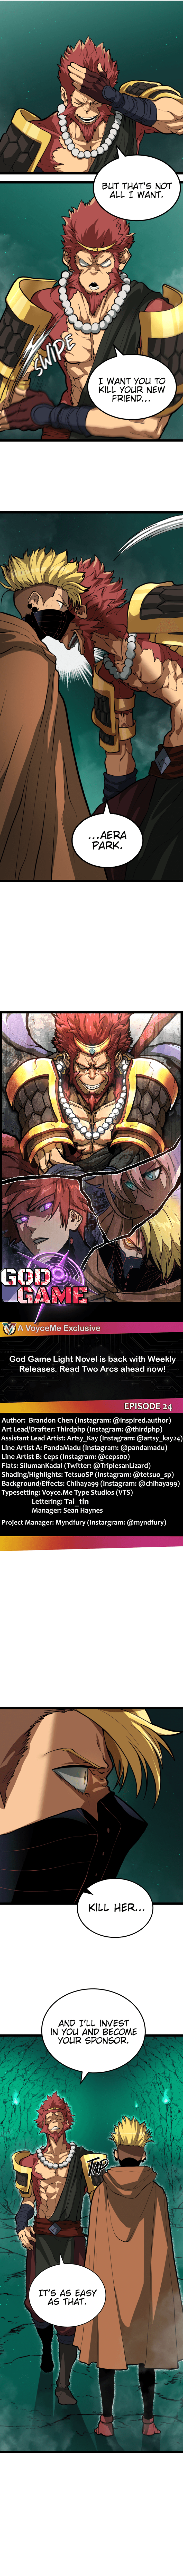 Light Novel Like The God Game